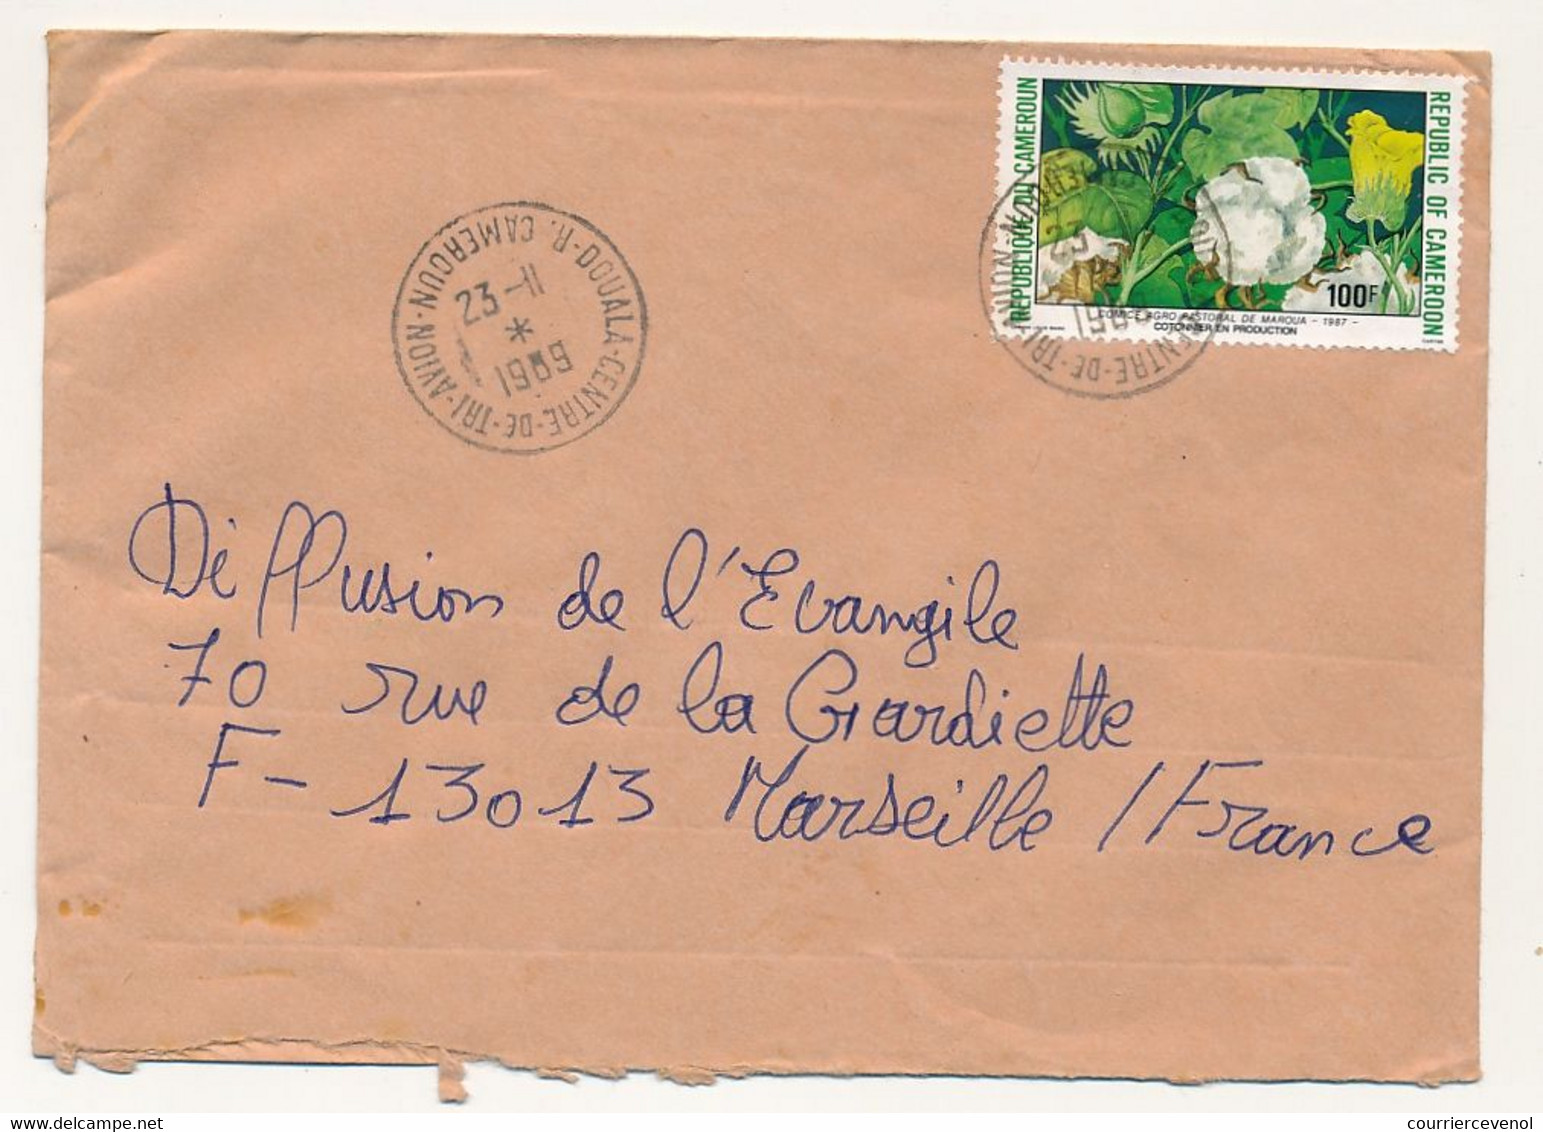 CAMEROUN => Enveloppe Douala Centre De Tri Avion Pour France, Affr. 100F Cotonnier - 23/11/1969 - Kamerun (1960-...)